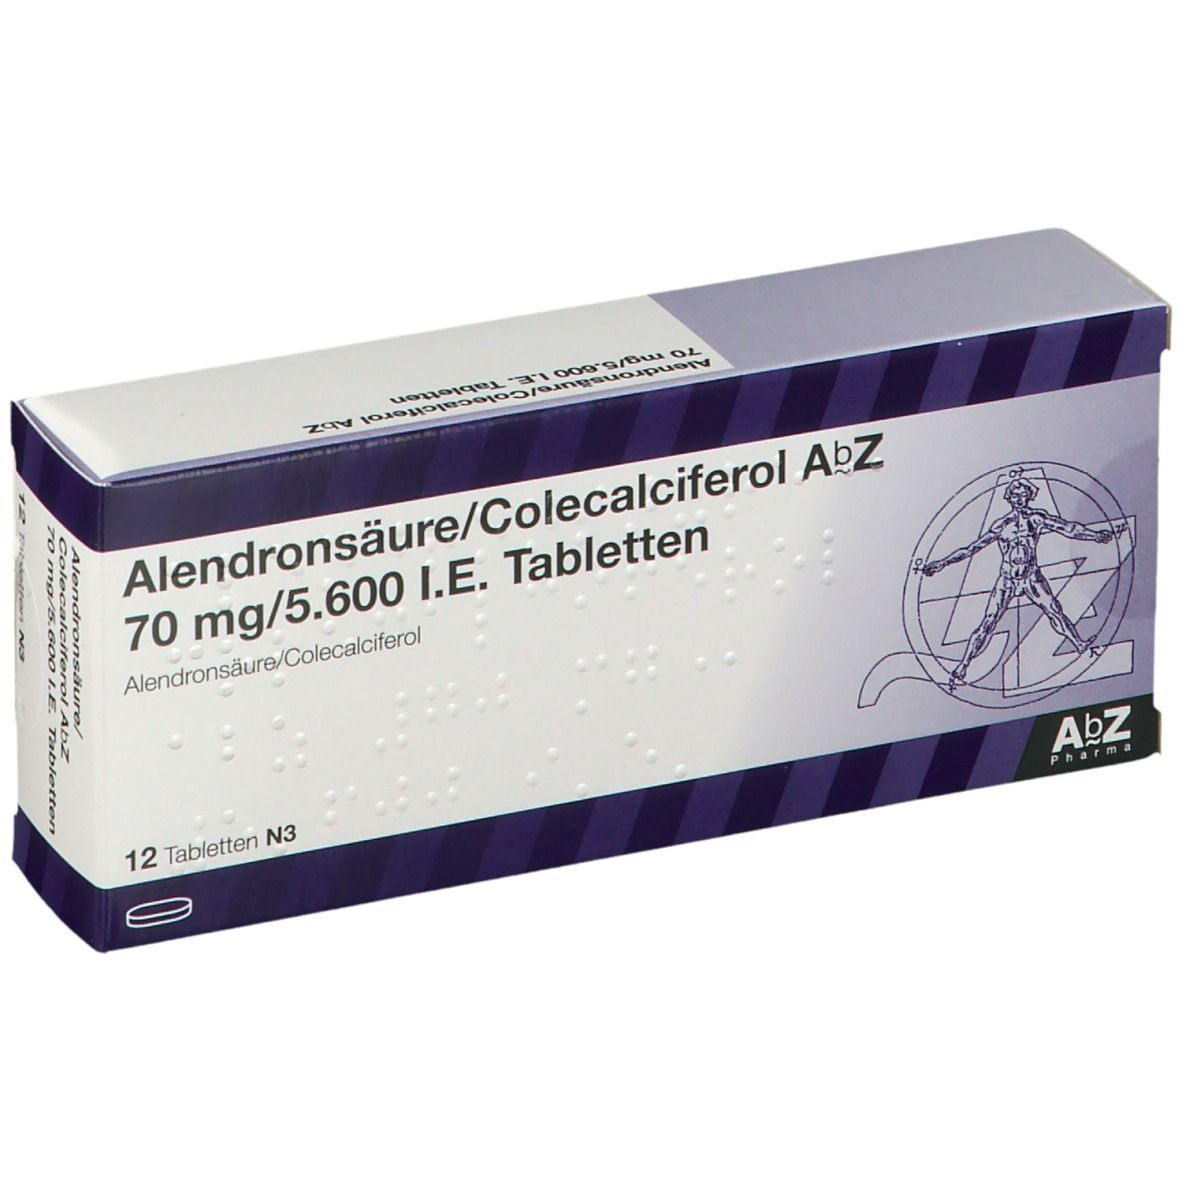 Alend/Col AbZ 70/5.600 